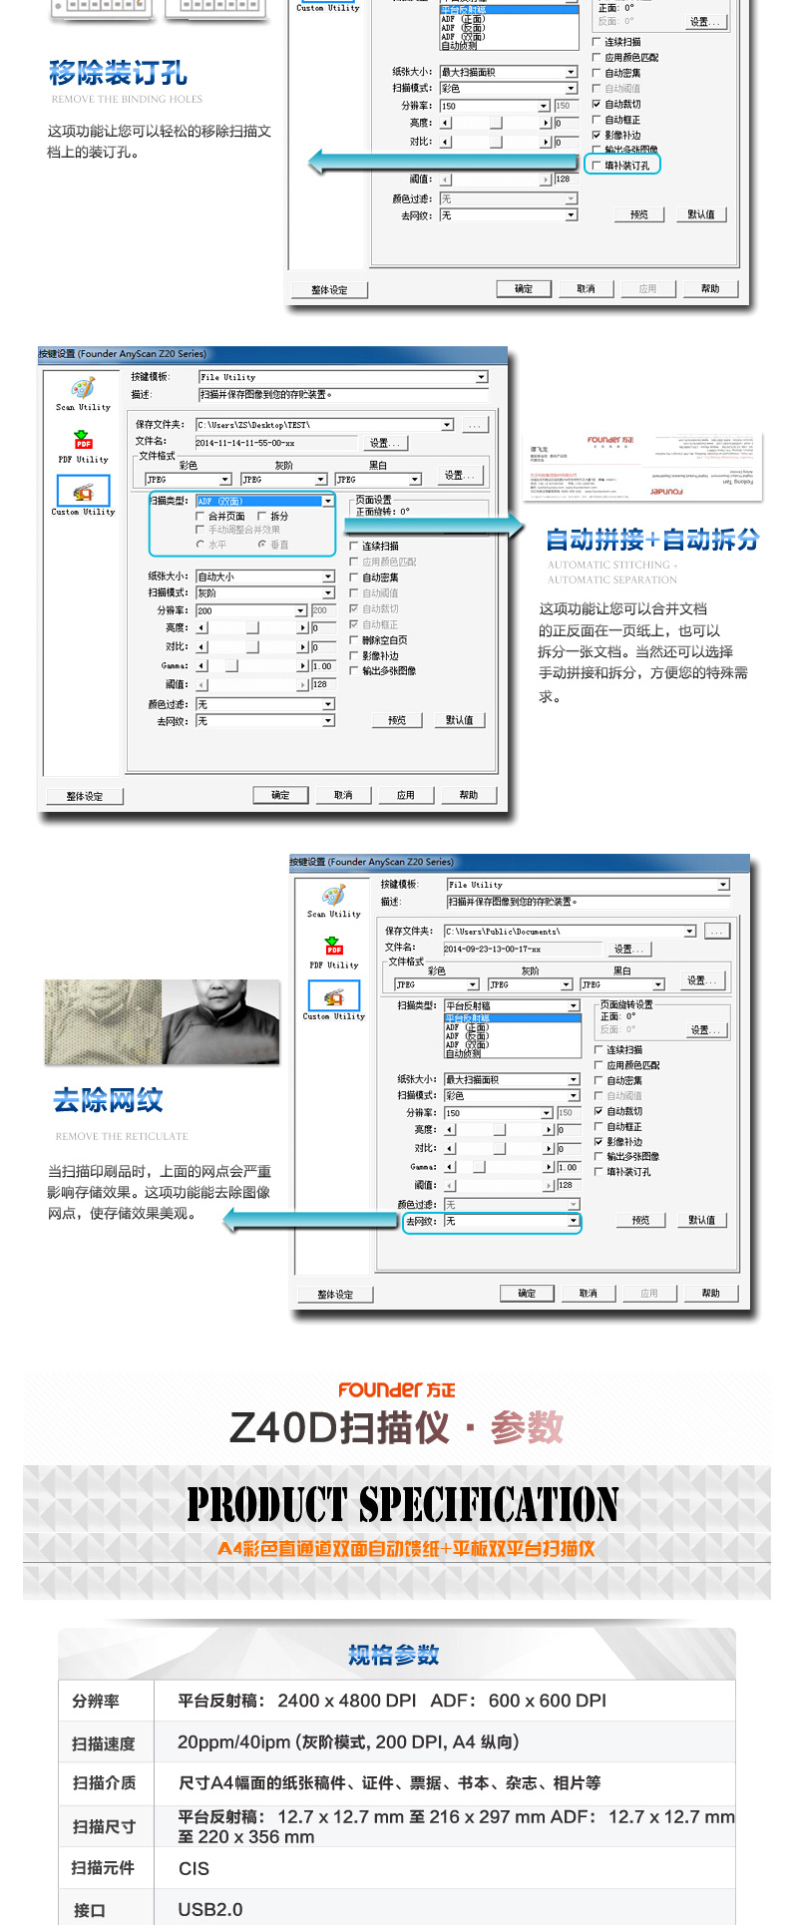 方正 Founder 双平台高速文档扫描仪 Z40D 